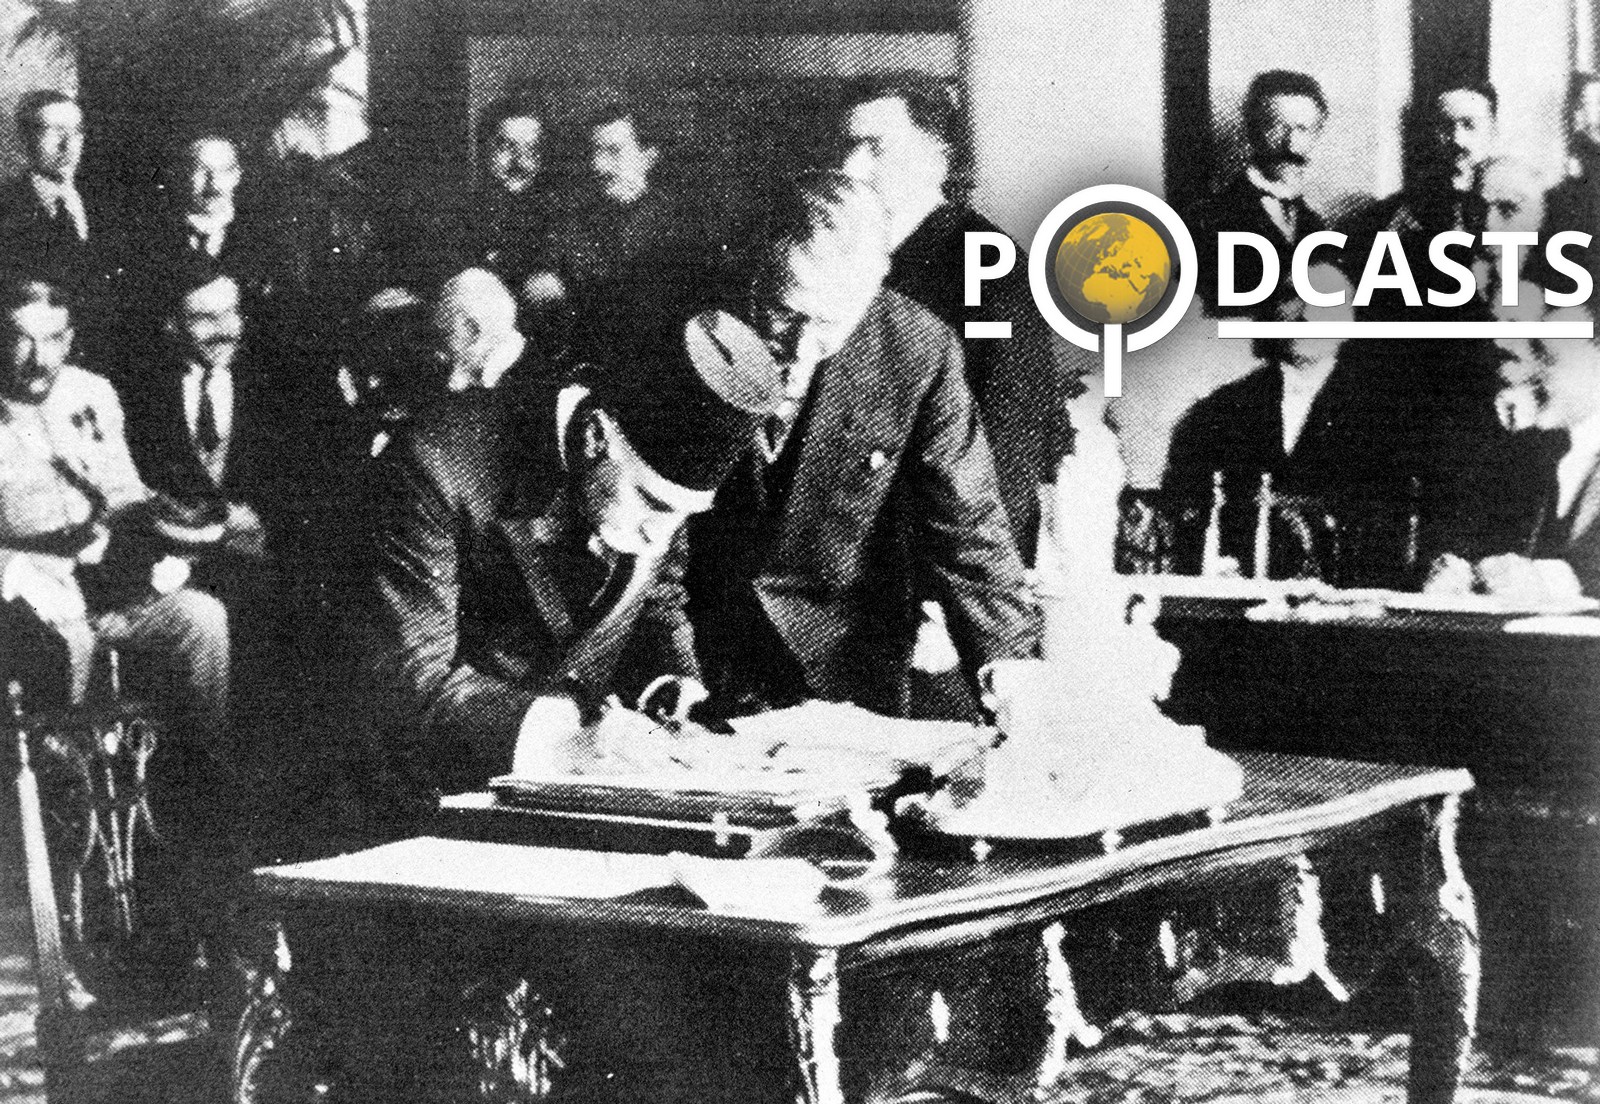 Podcast – La chute des Empires austro-hongrois et ottoman 1919-1920